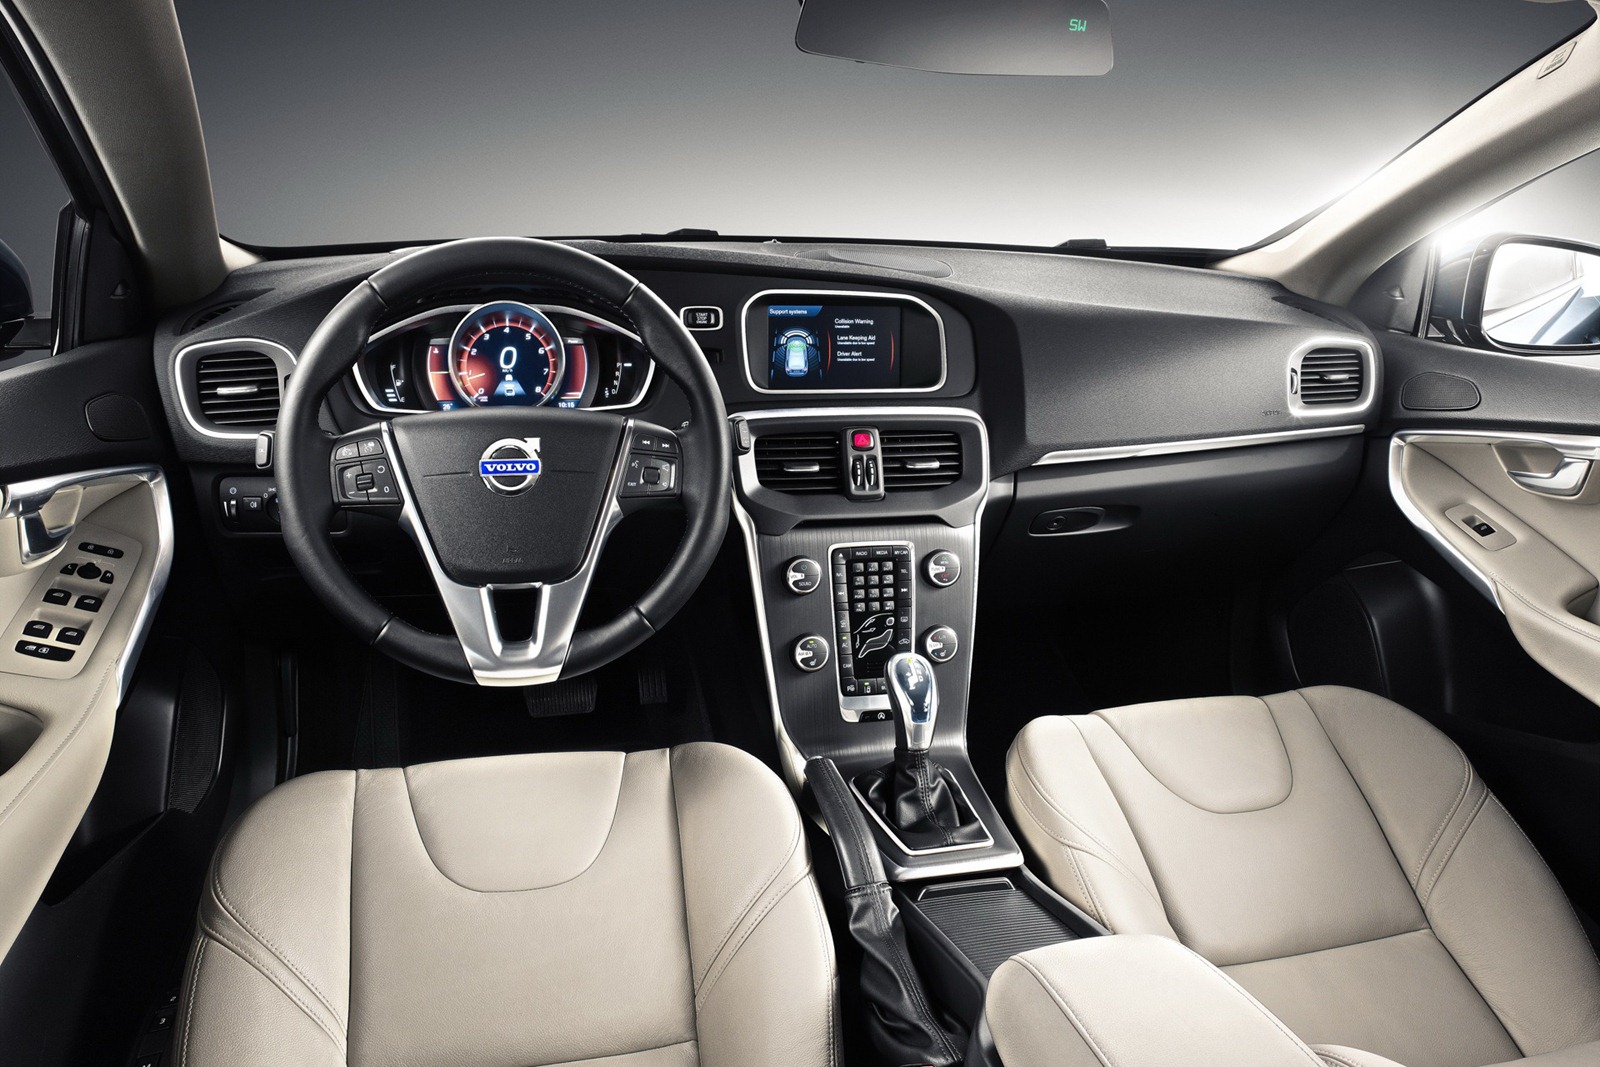 2013 Volvo V40 interior